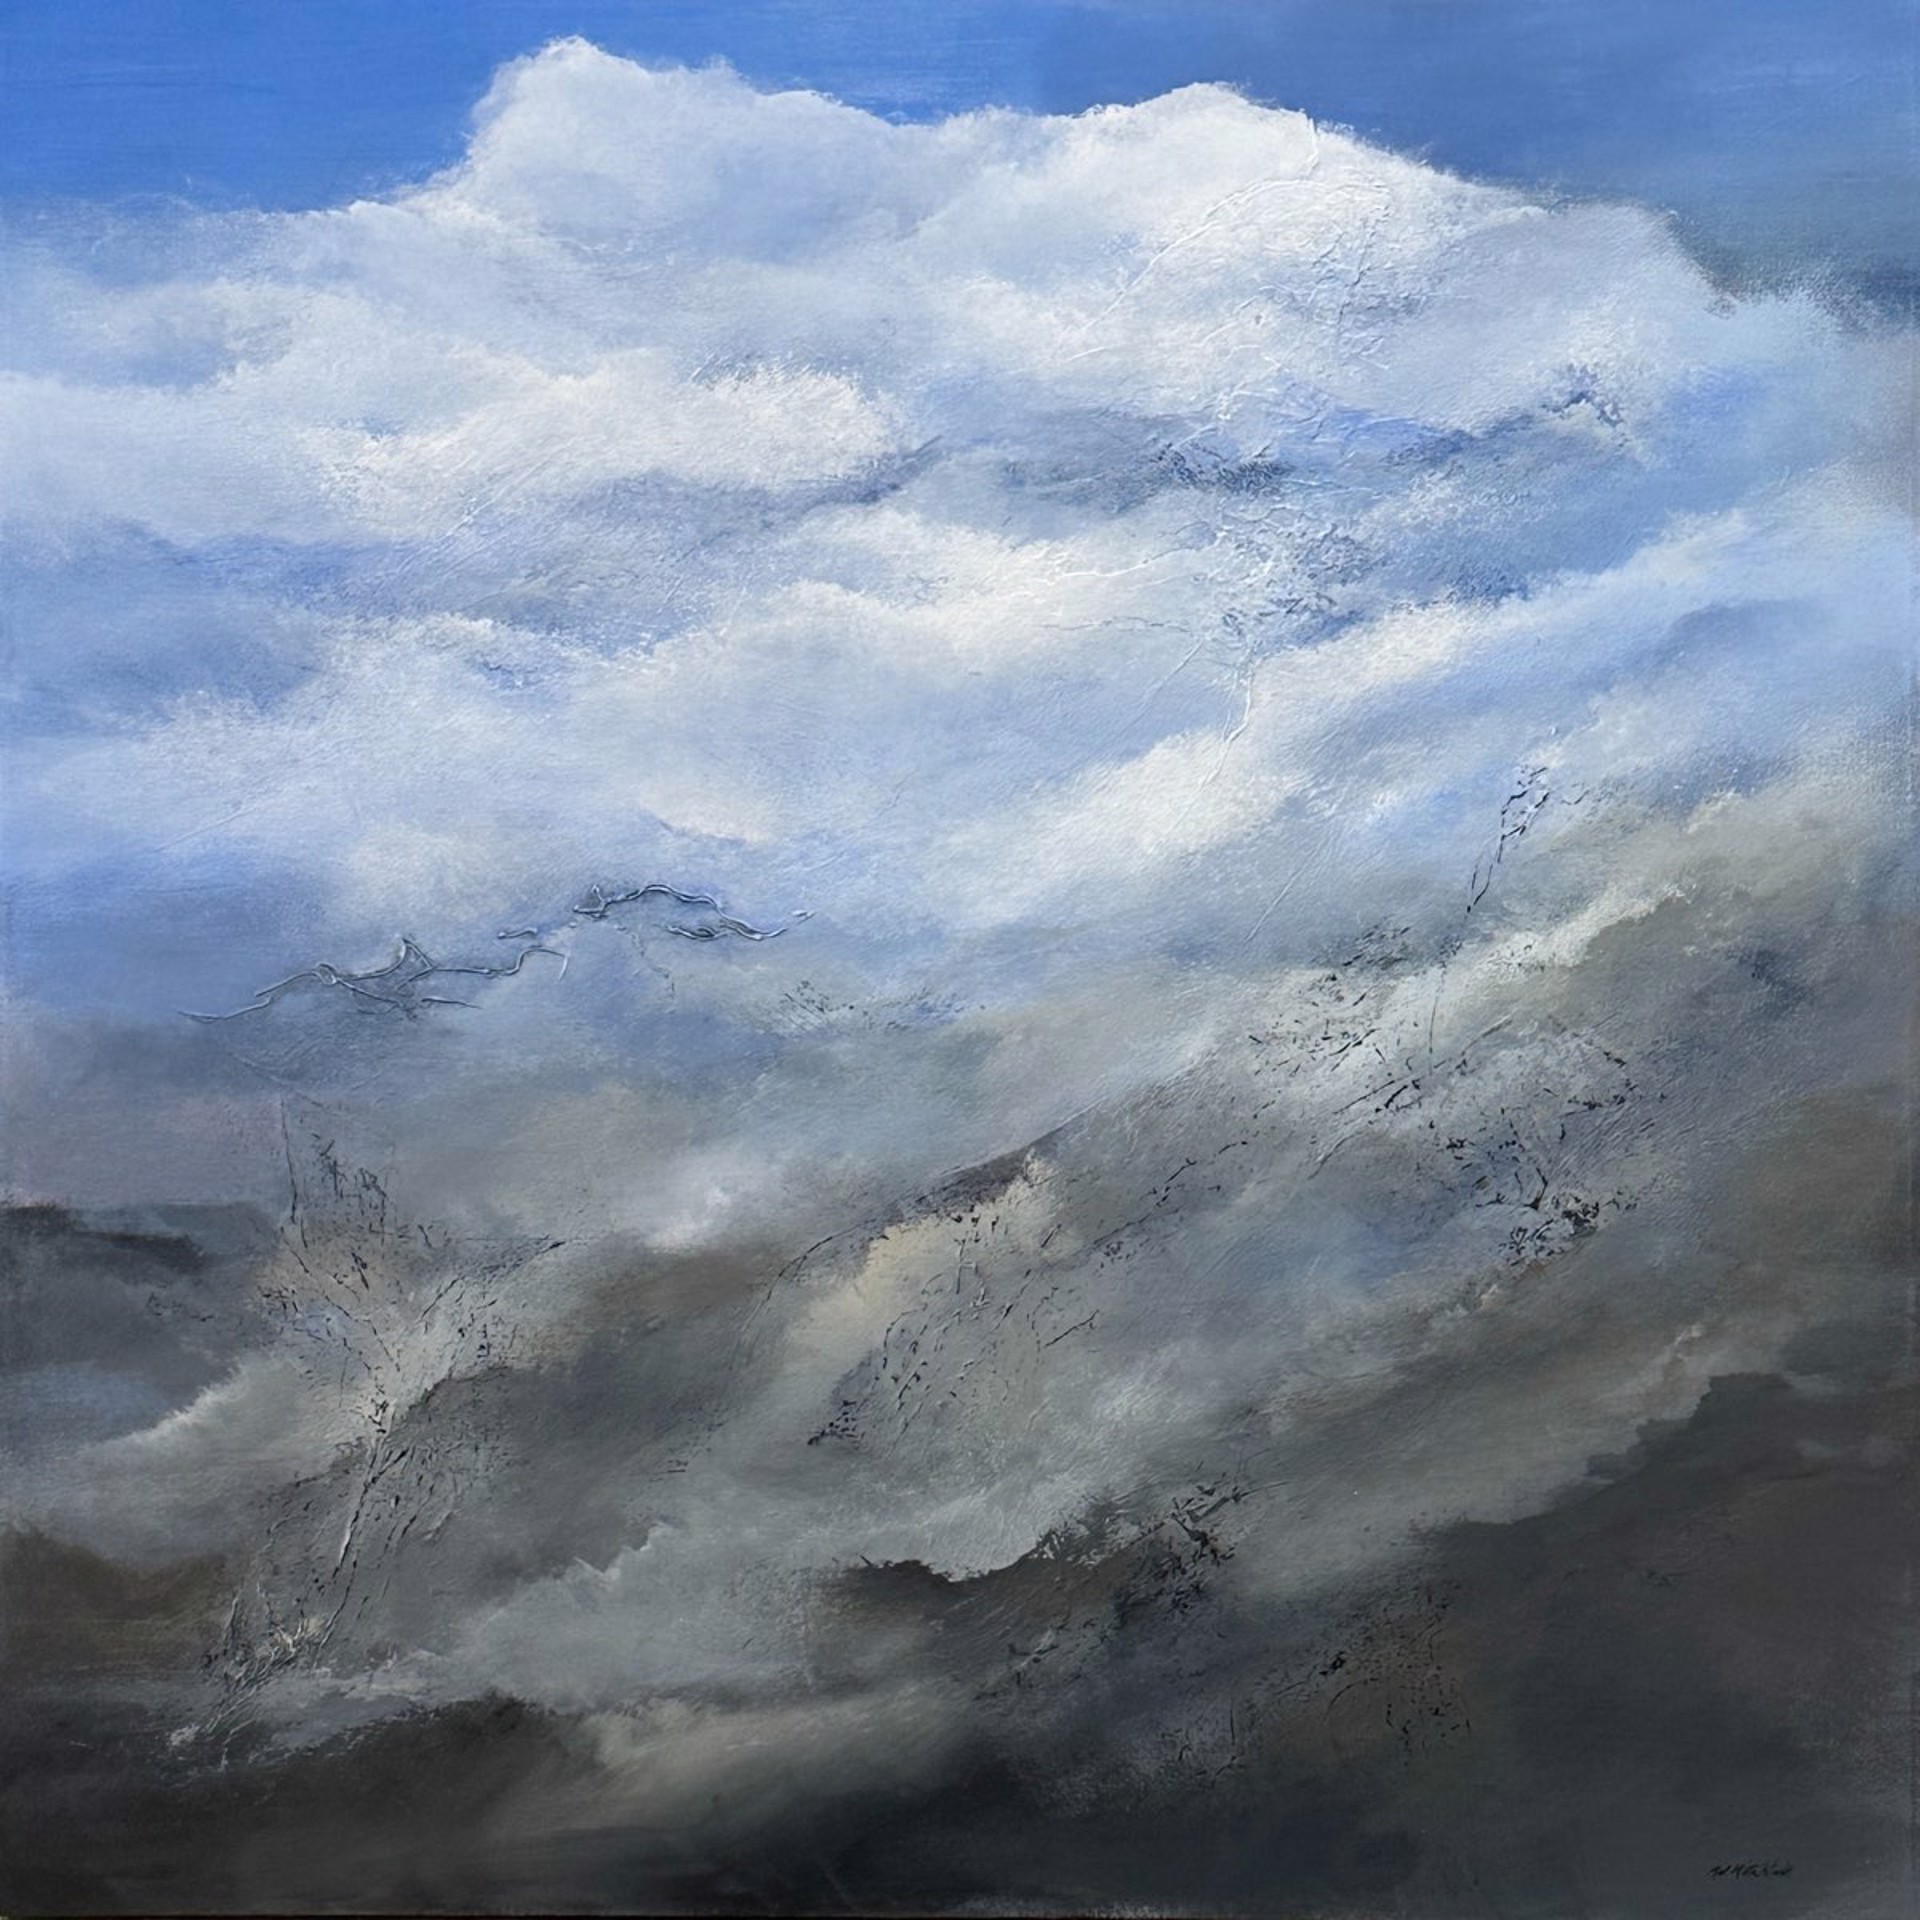 Desert Winds by Mary Ellen Mittelstaedt